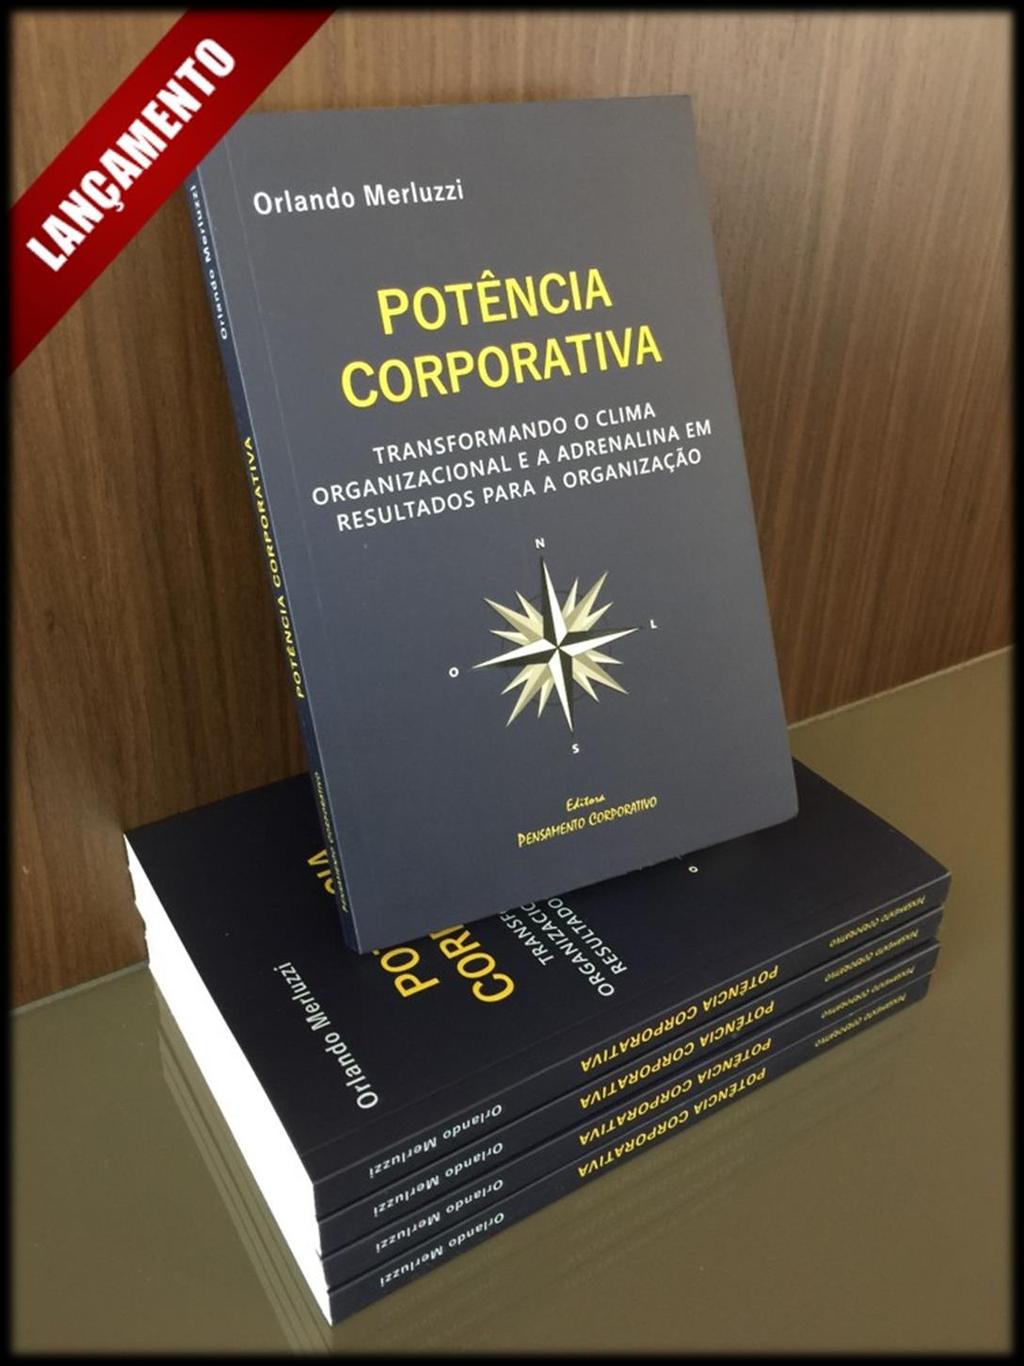 Orlando Merluzzi traz em seu livro ensinamentos do ambiente corporativo e apresenta o conceito da Potência Corporativa, como consequência da gestão do clima organizacional e das relações